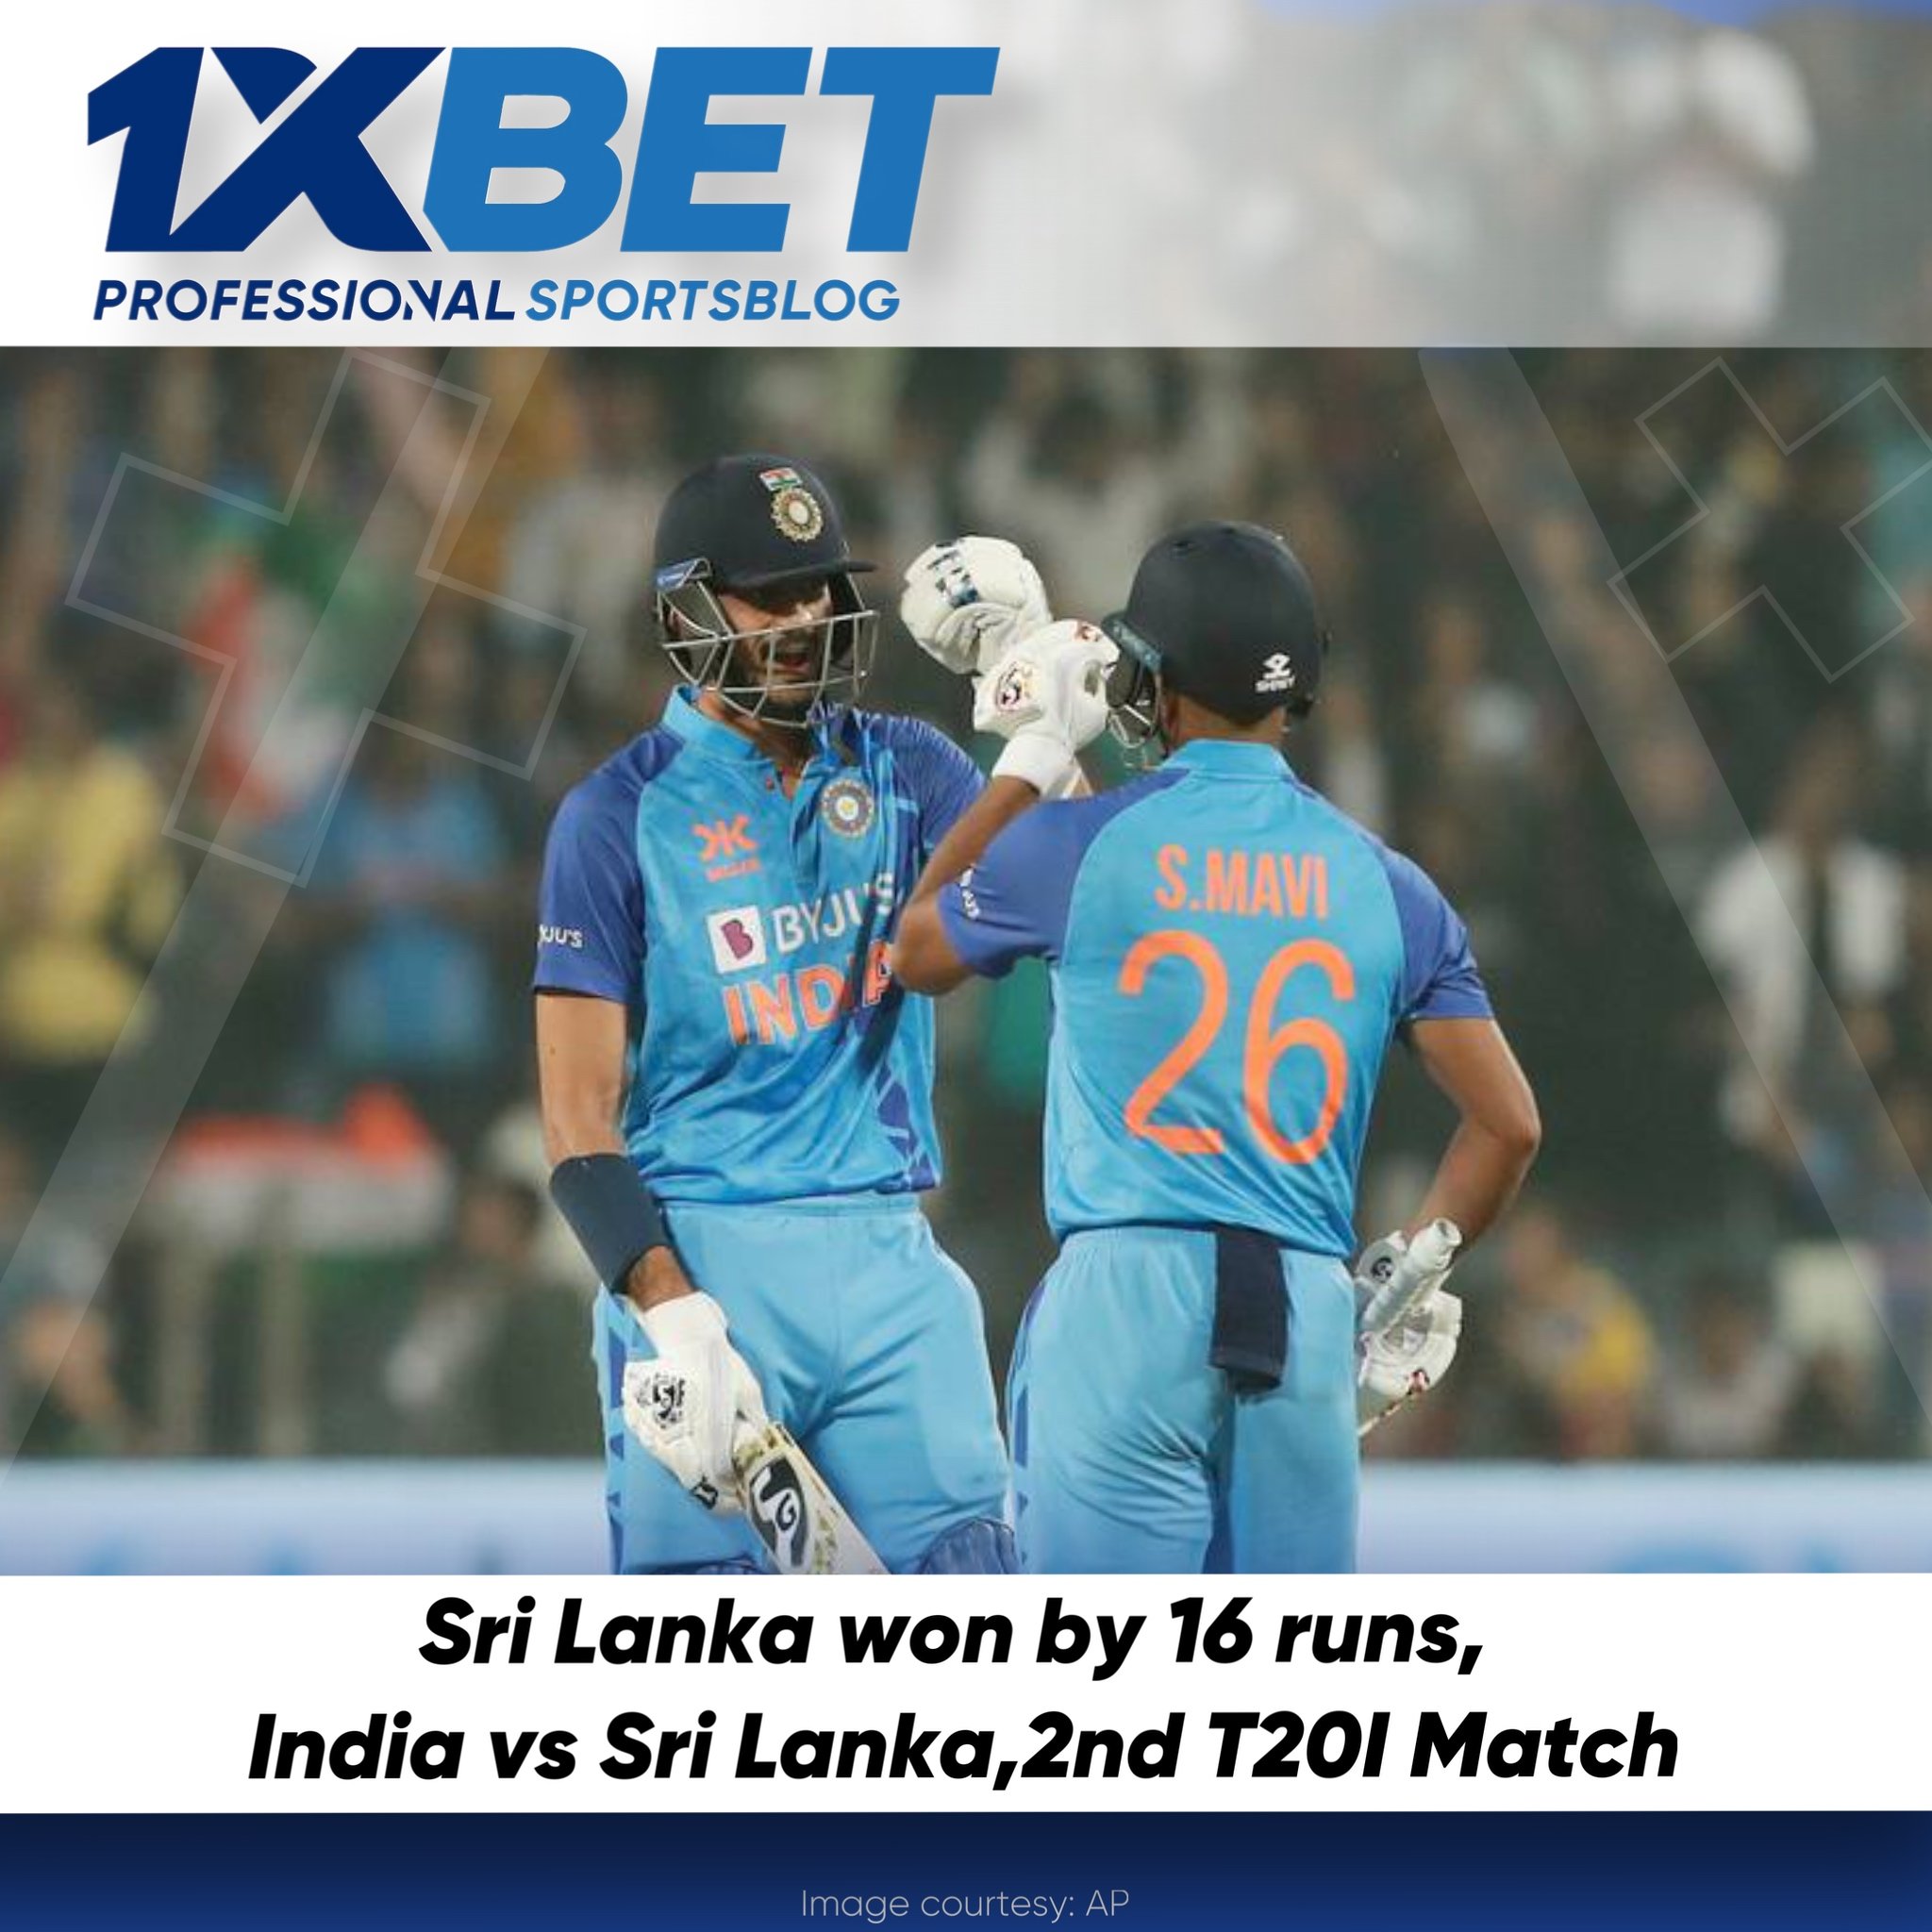 Sri Lanka won by 16 runs